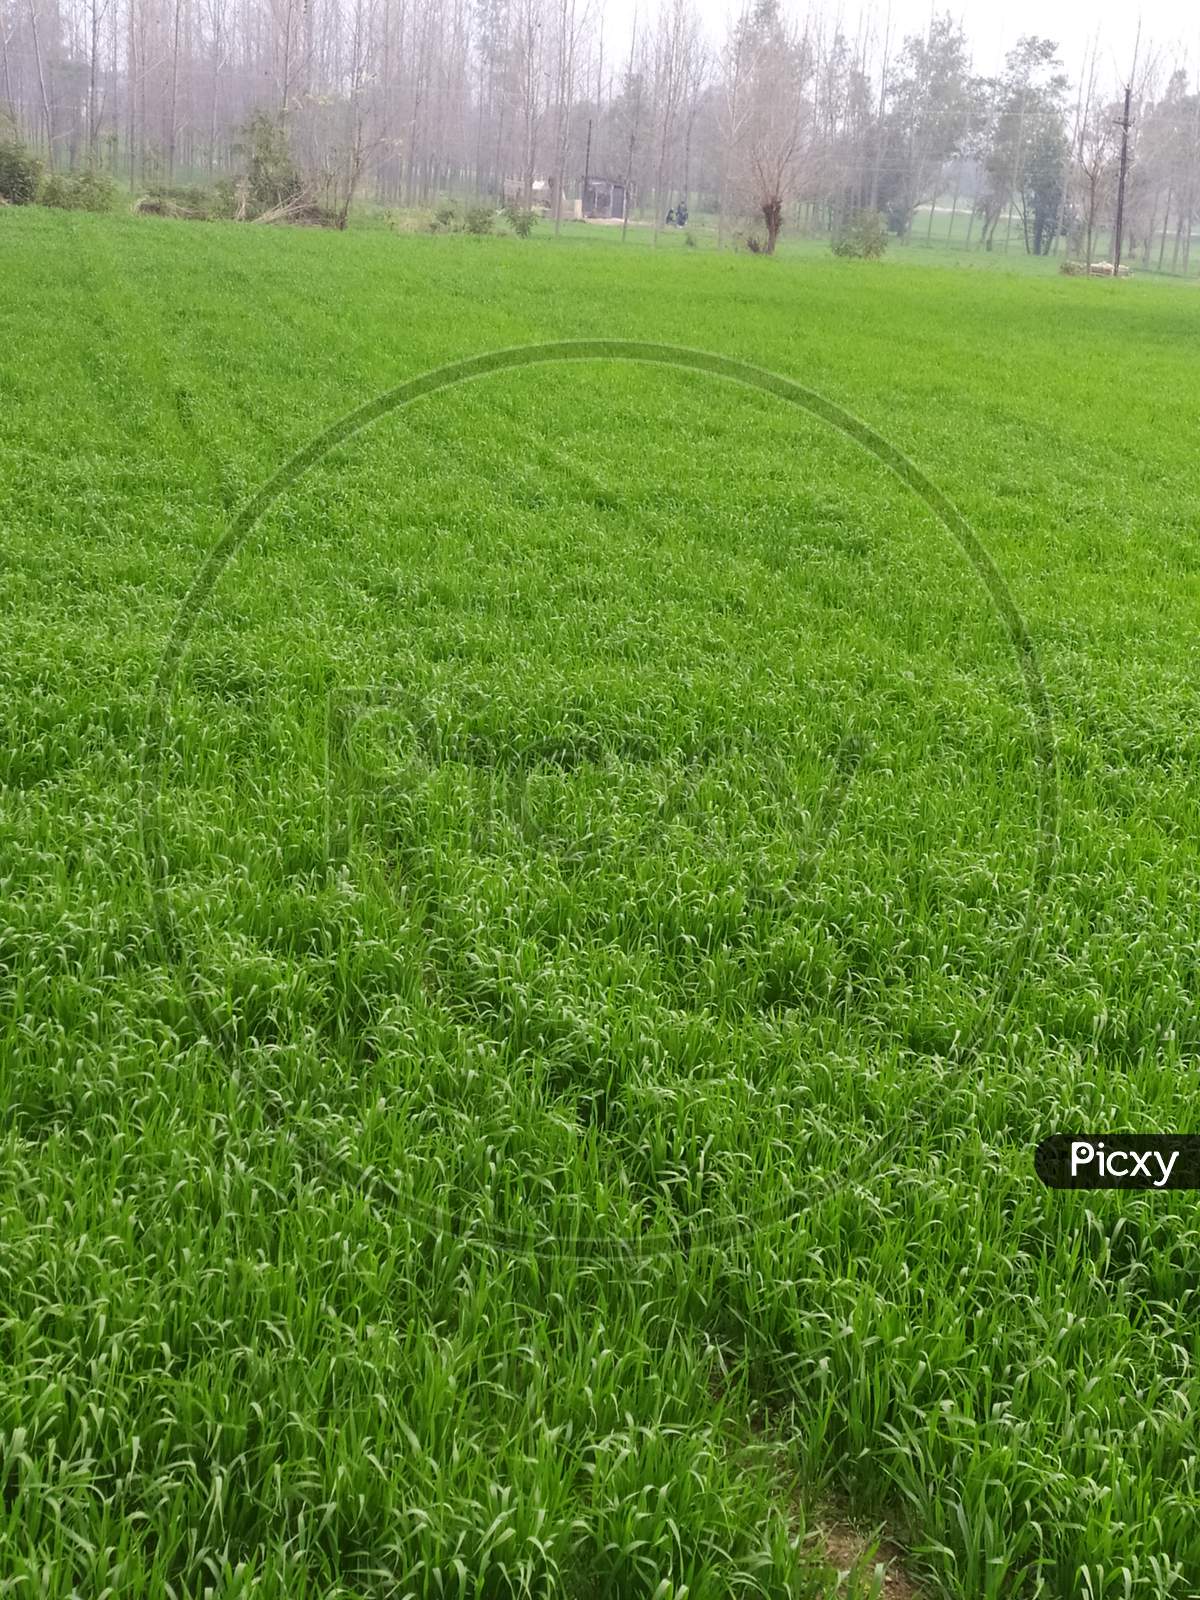 Green colour wheat field.